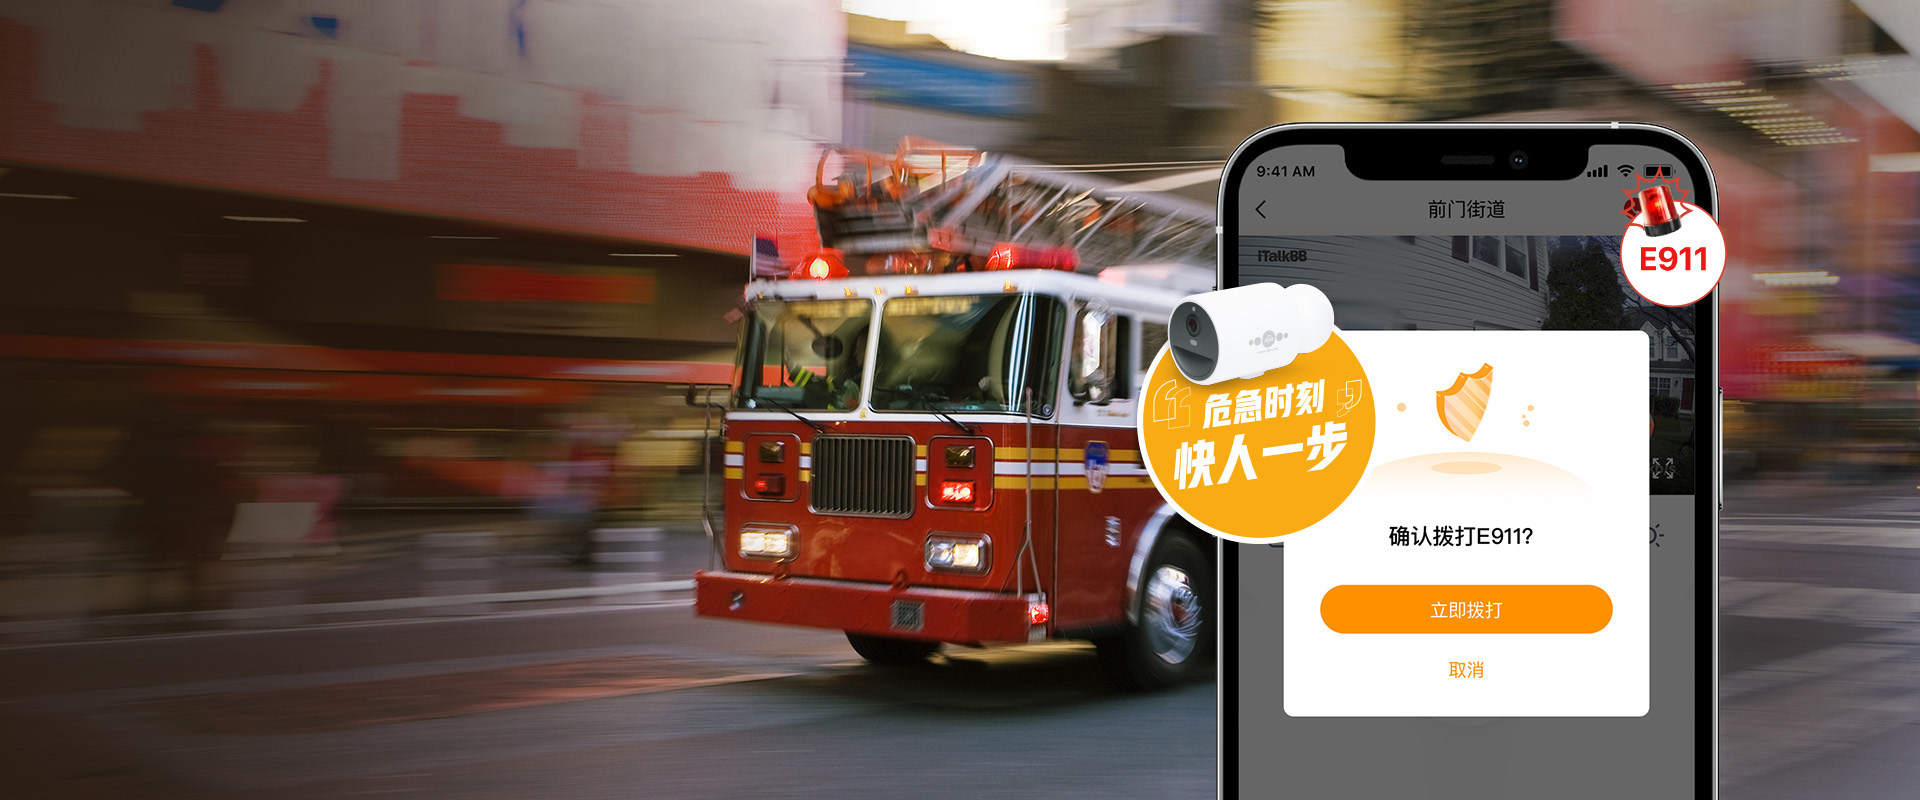 911报警，红色消防车，AIjia智能家庭安防E911一键报警功能 ，家庭安防App